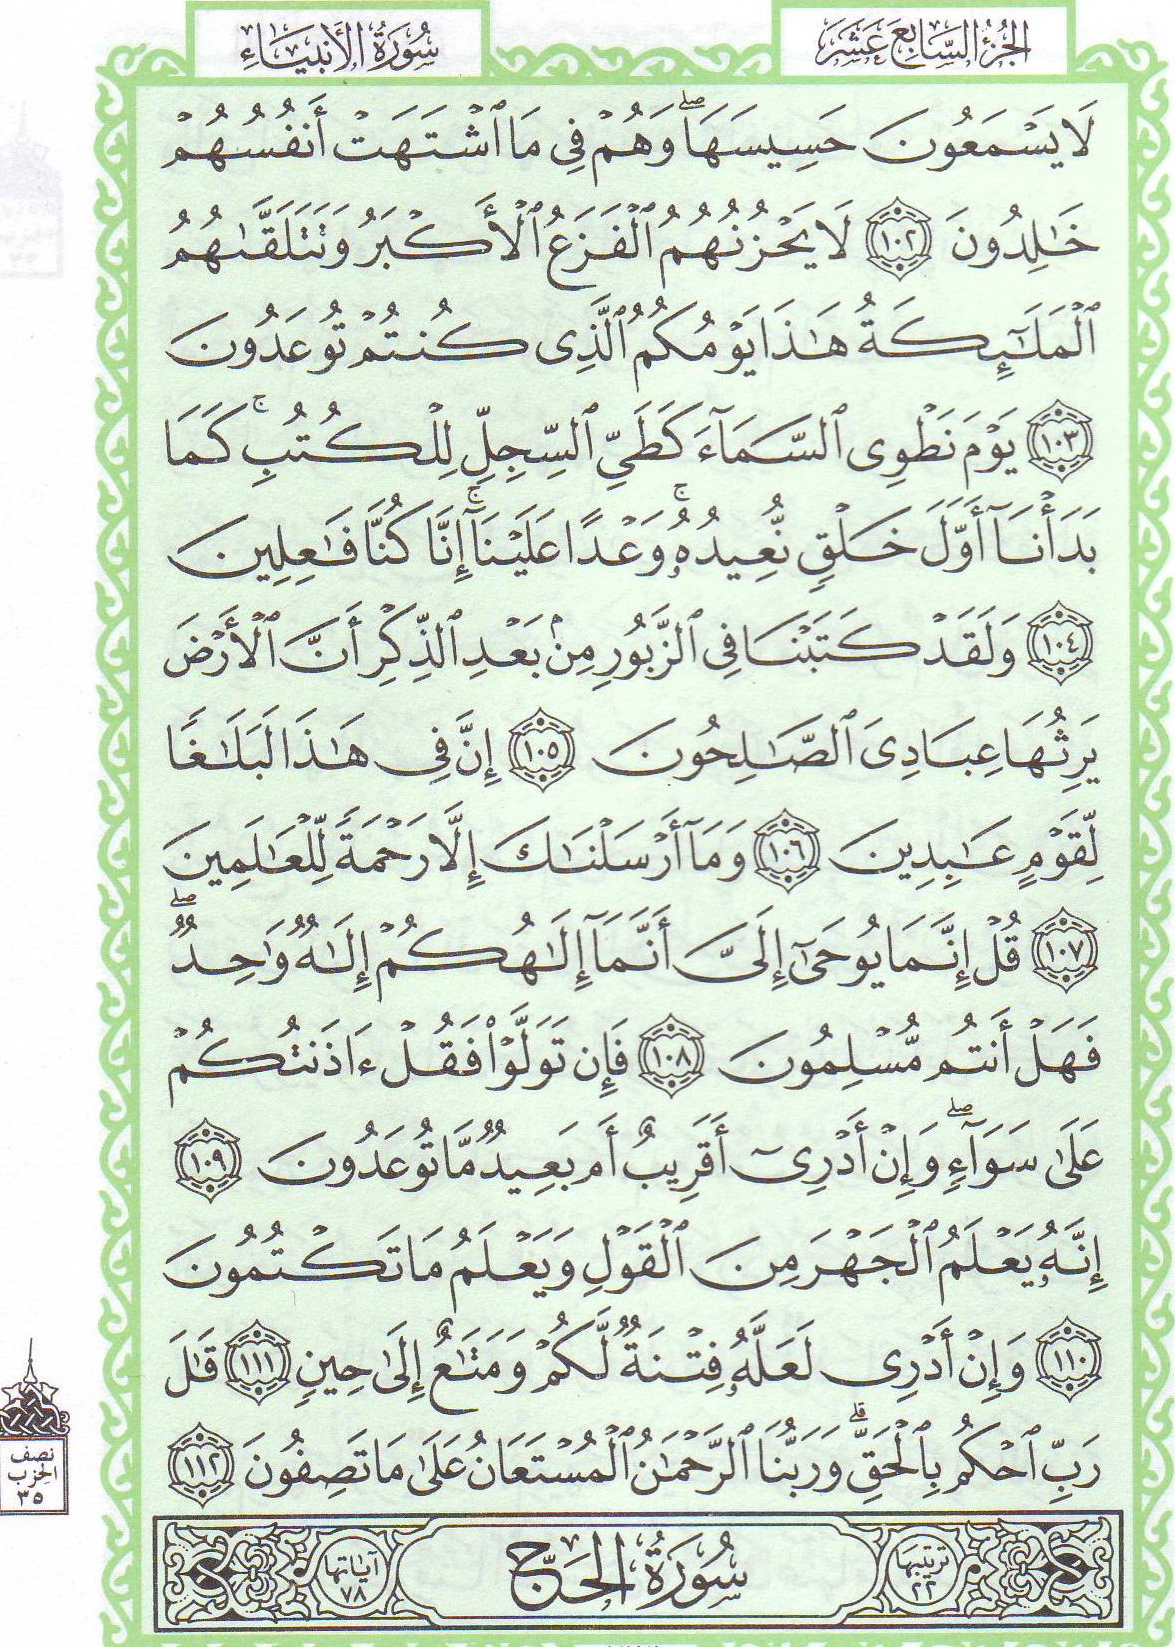 Qur'an_21_112.jpg